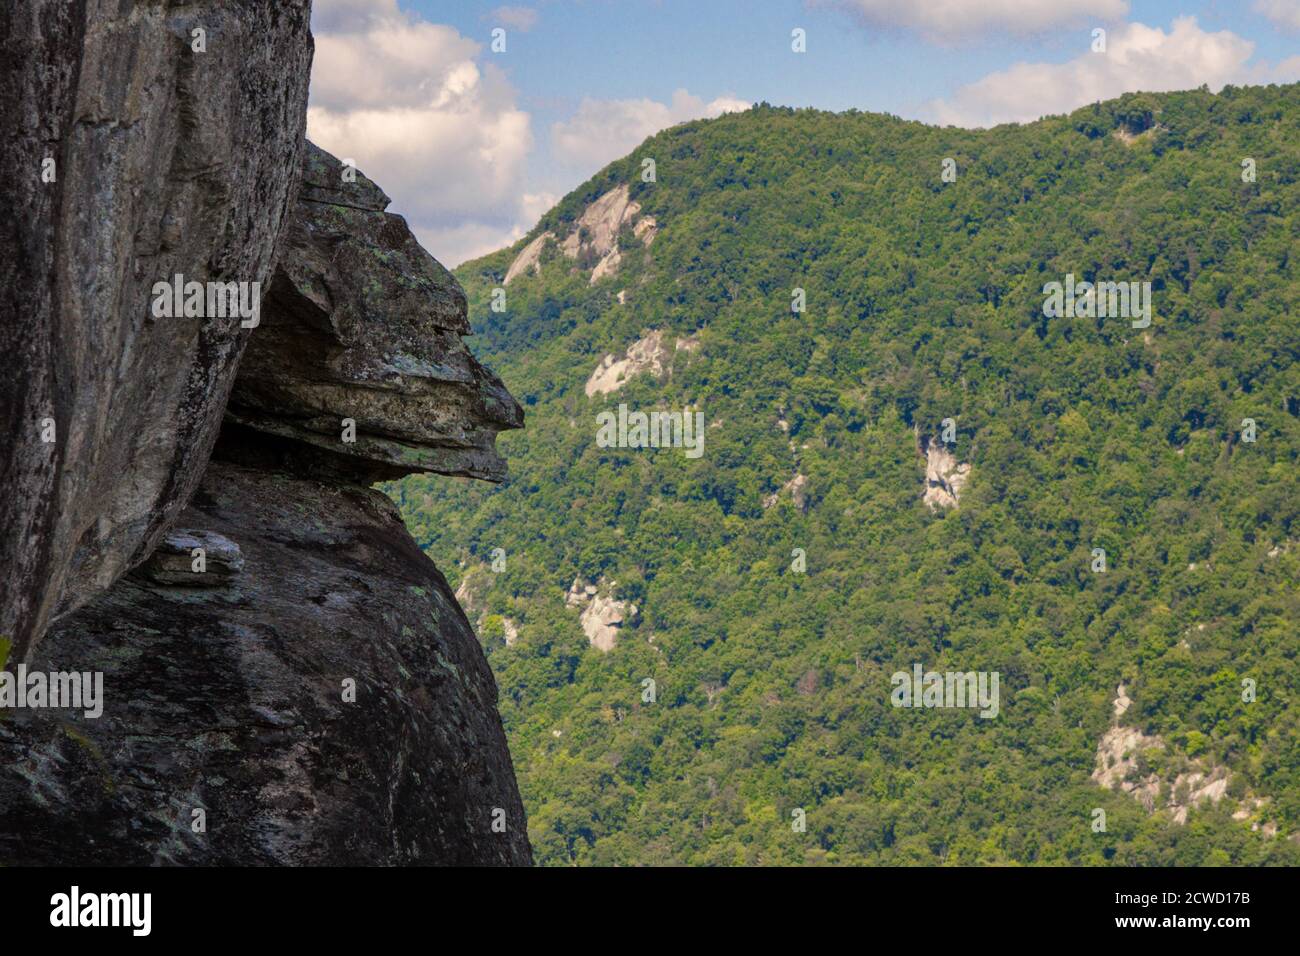 Devils Head rocher sur le bord d'une falaise abrupte au parc national de Chimney Rock dans les Appalaches de Caroline du Nord. Banque D'Images